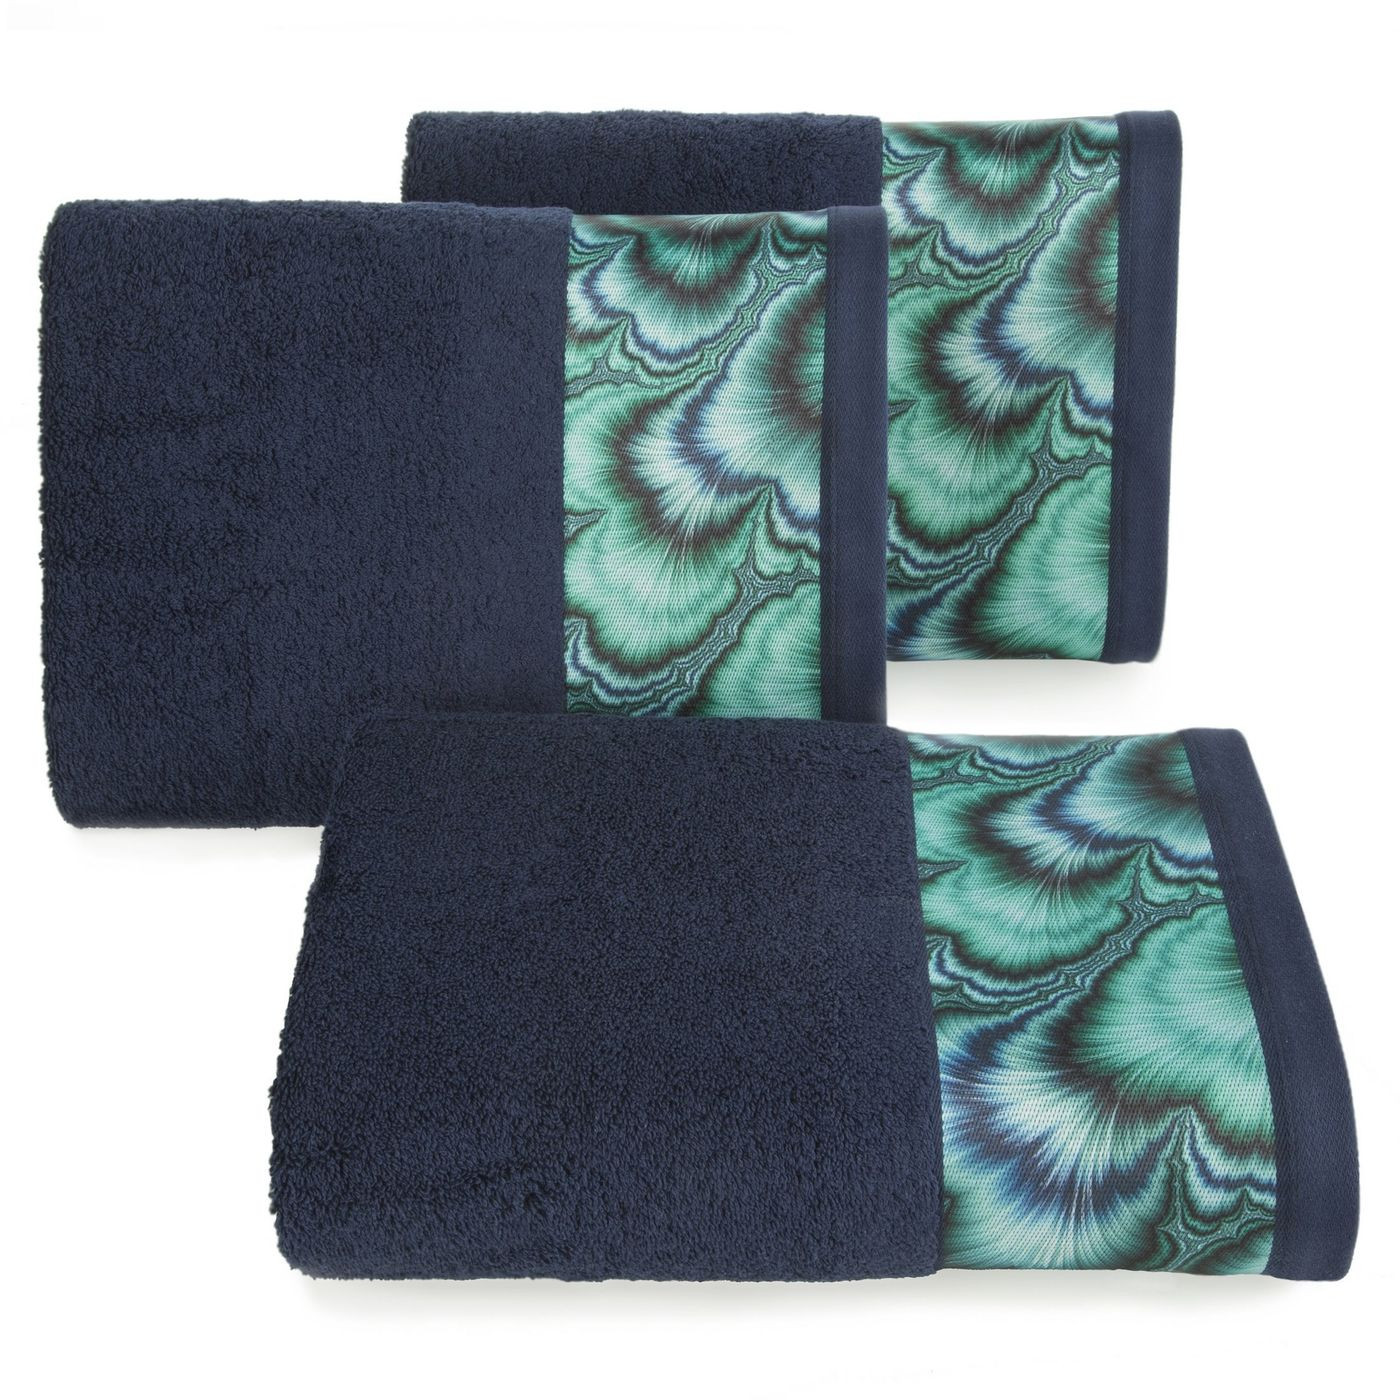 Granatowy ręcznik kąpielowy - mój wybór Eva Minge 50x90 cm